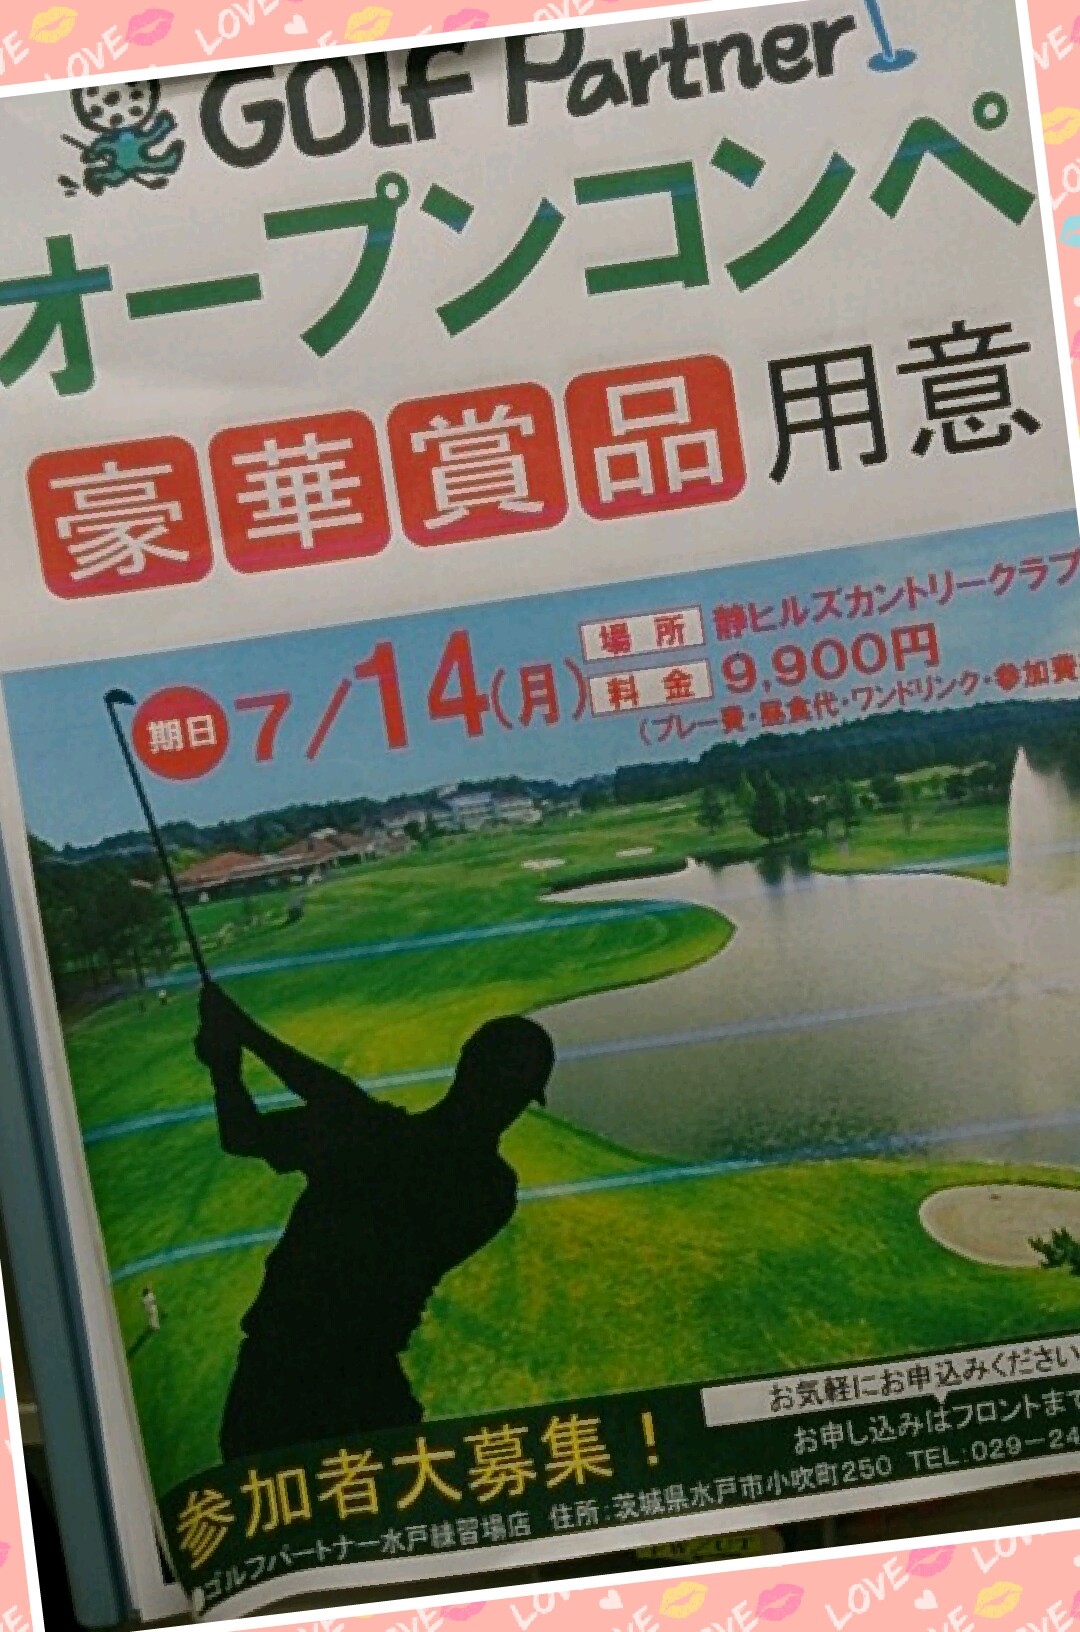 http://www.golfpartner.co.jp/960r/2014/06/08/Collage%202014-06-08%2017_44_19.jpg